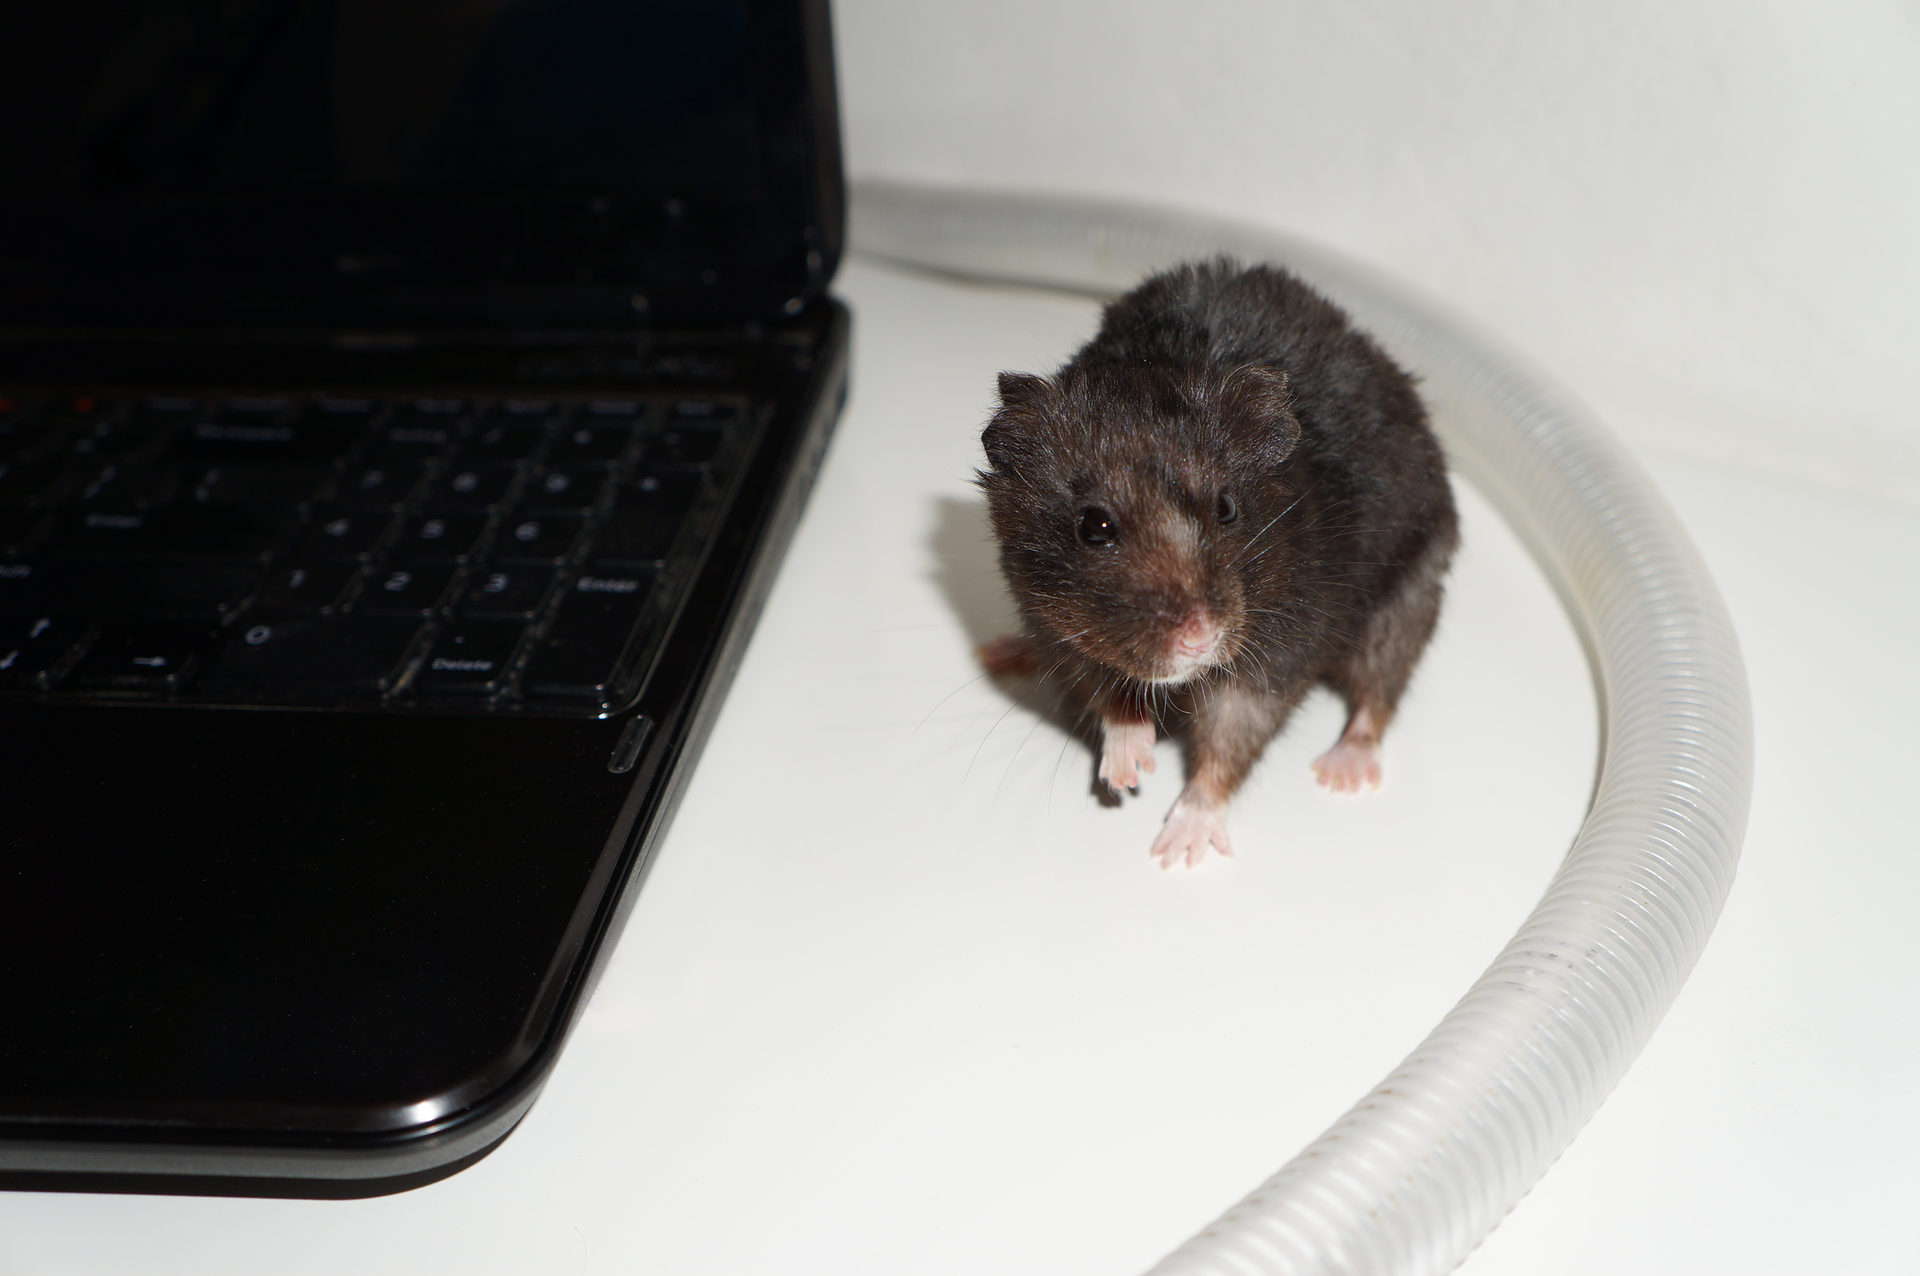 Fotografia przedstawia komputer przenośny z odchodzącym od niego kablem zabezpieczonym za pomocą plastikowej osłonki. Obok zabezpieczonego kabla siedzi mysz.